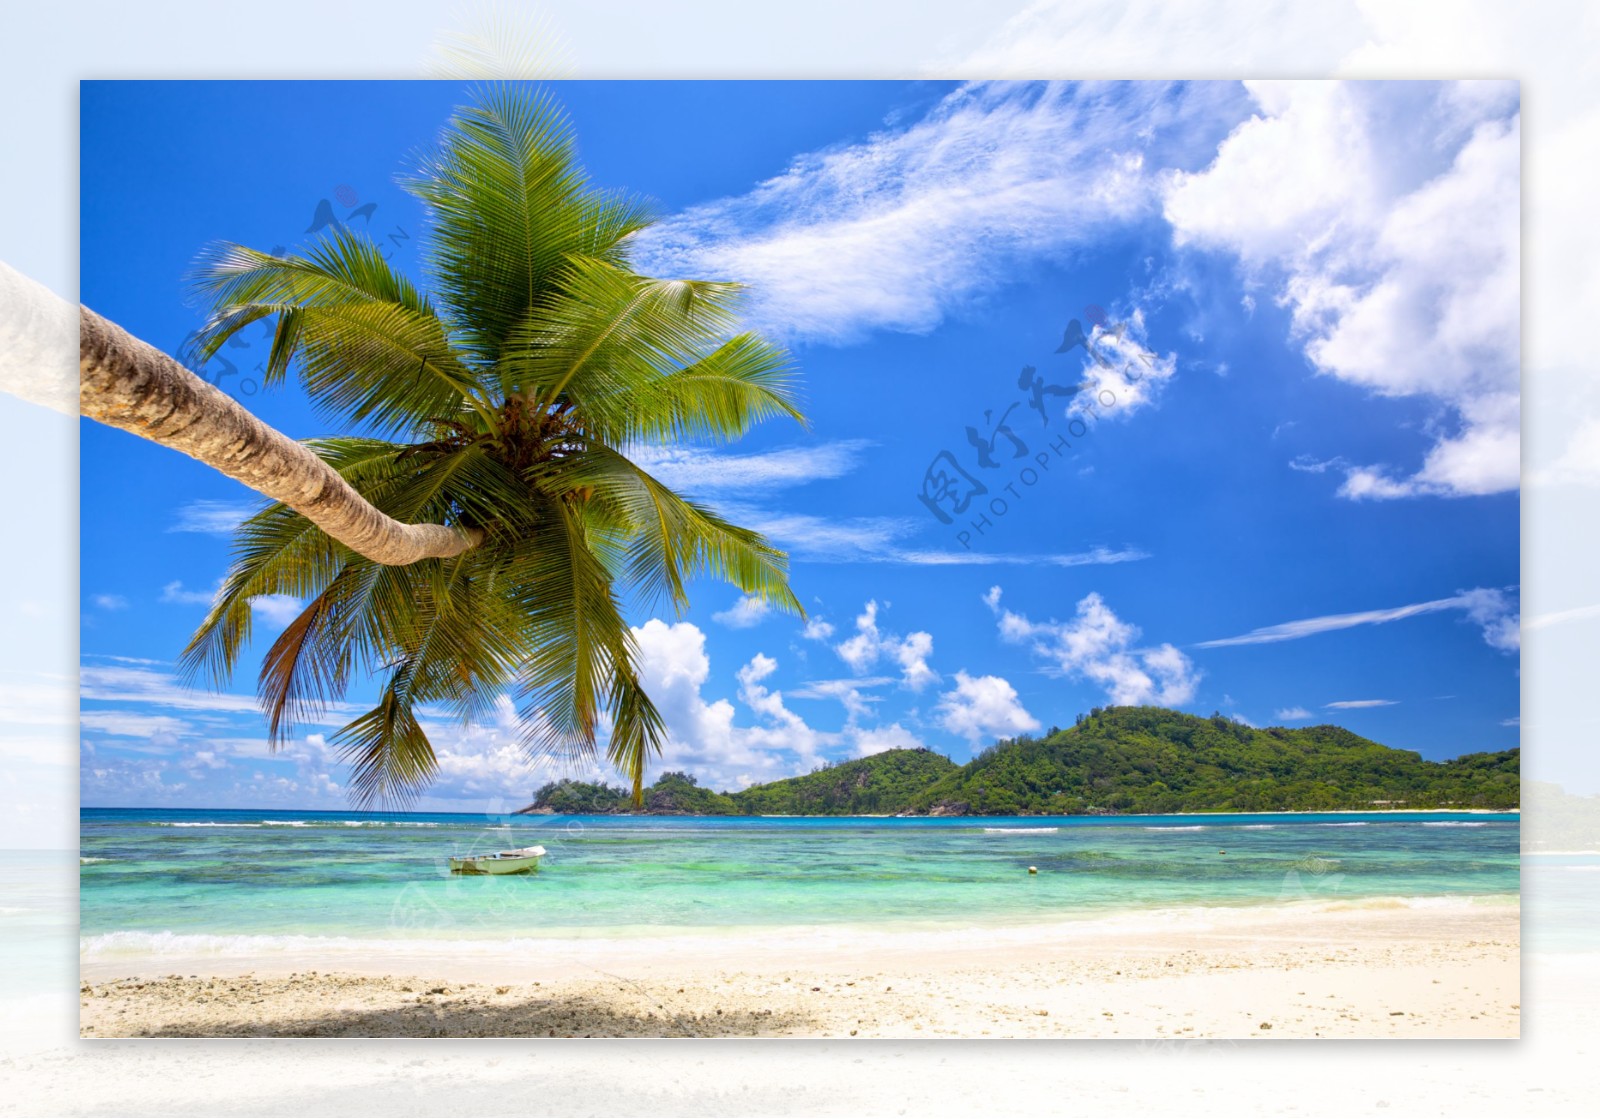 椰树与沙滩风景图片